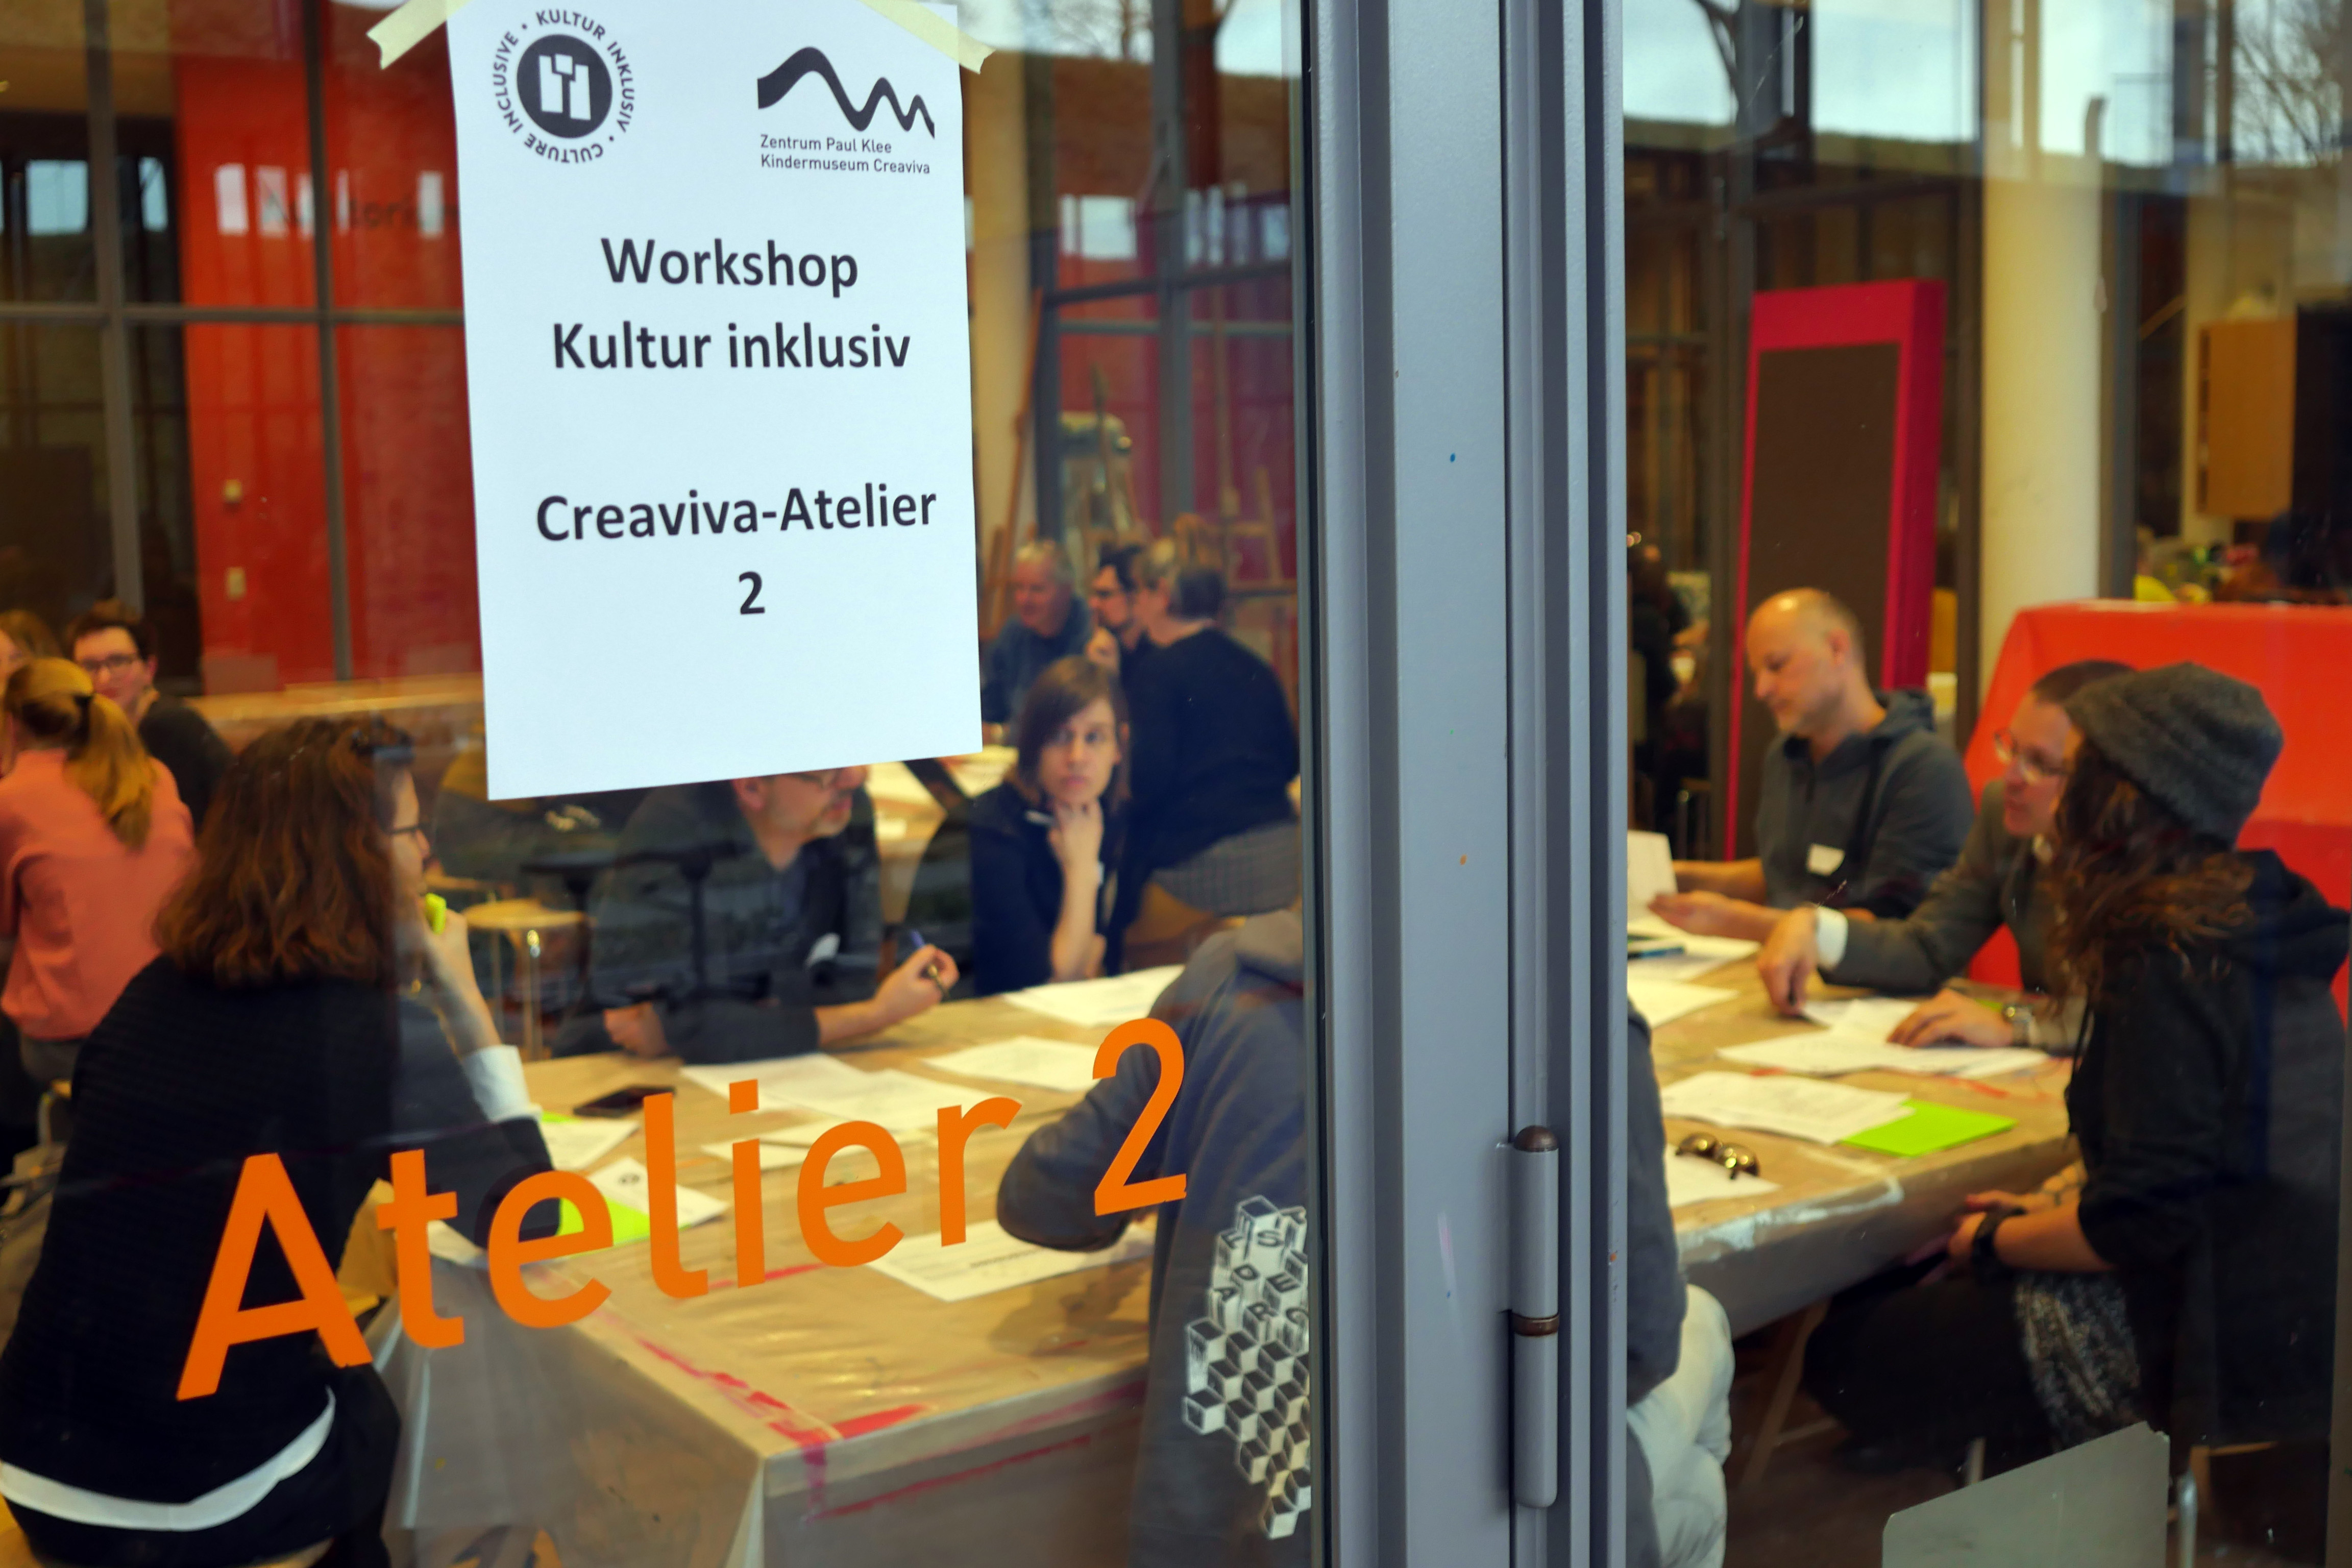 La photo représente l'atelier participatif. Derrière une porte transparente indiquant Atelier 2, on distingue deux grandes tables à dessin autour desquelles plusieurs personnes discutent.